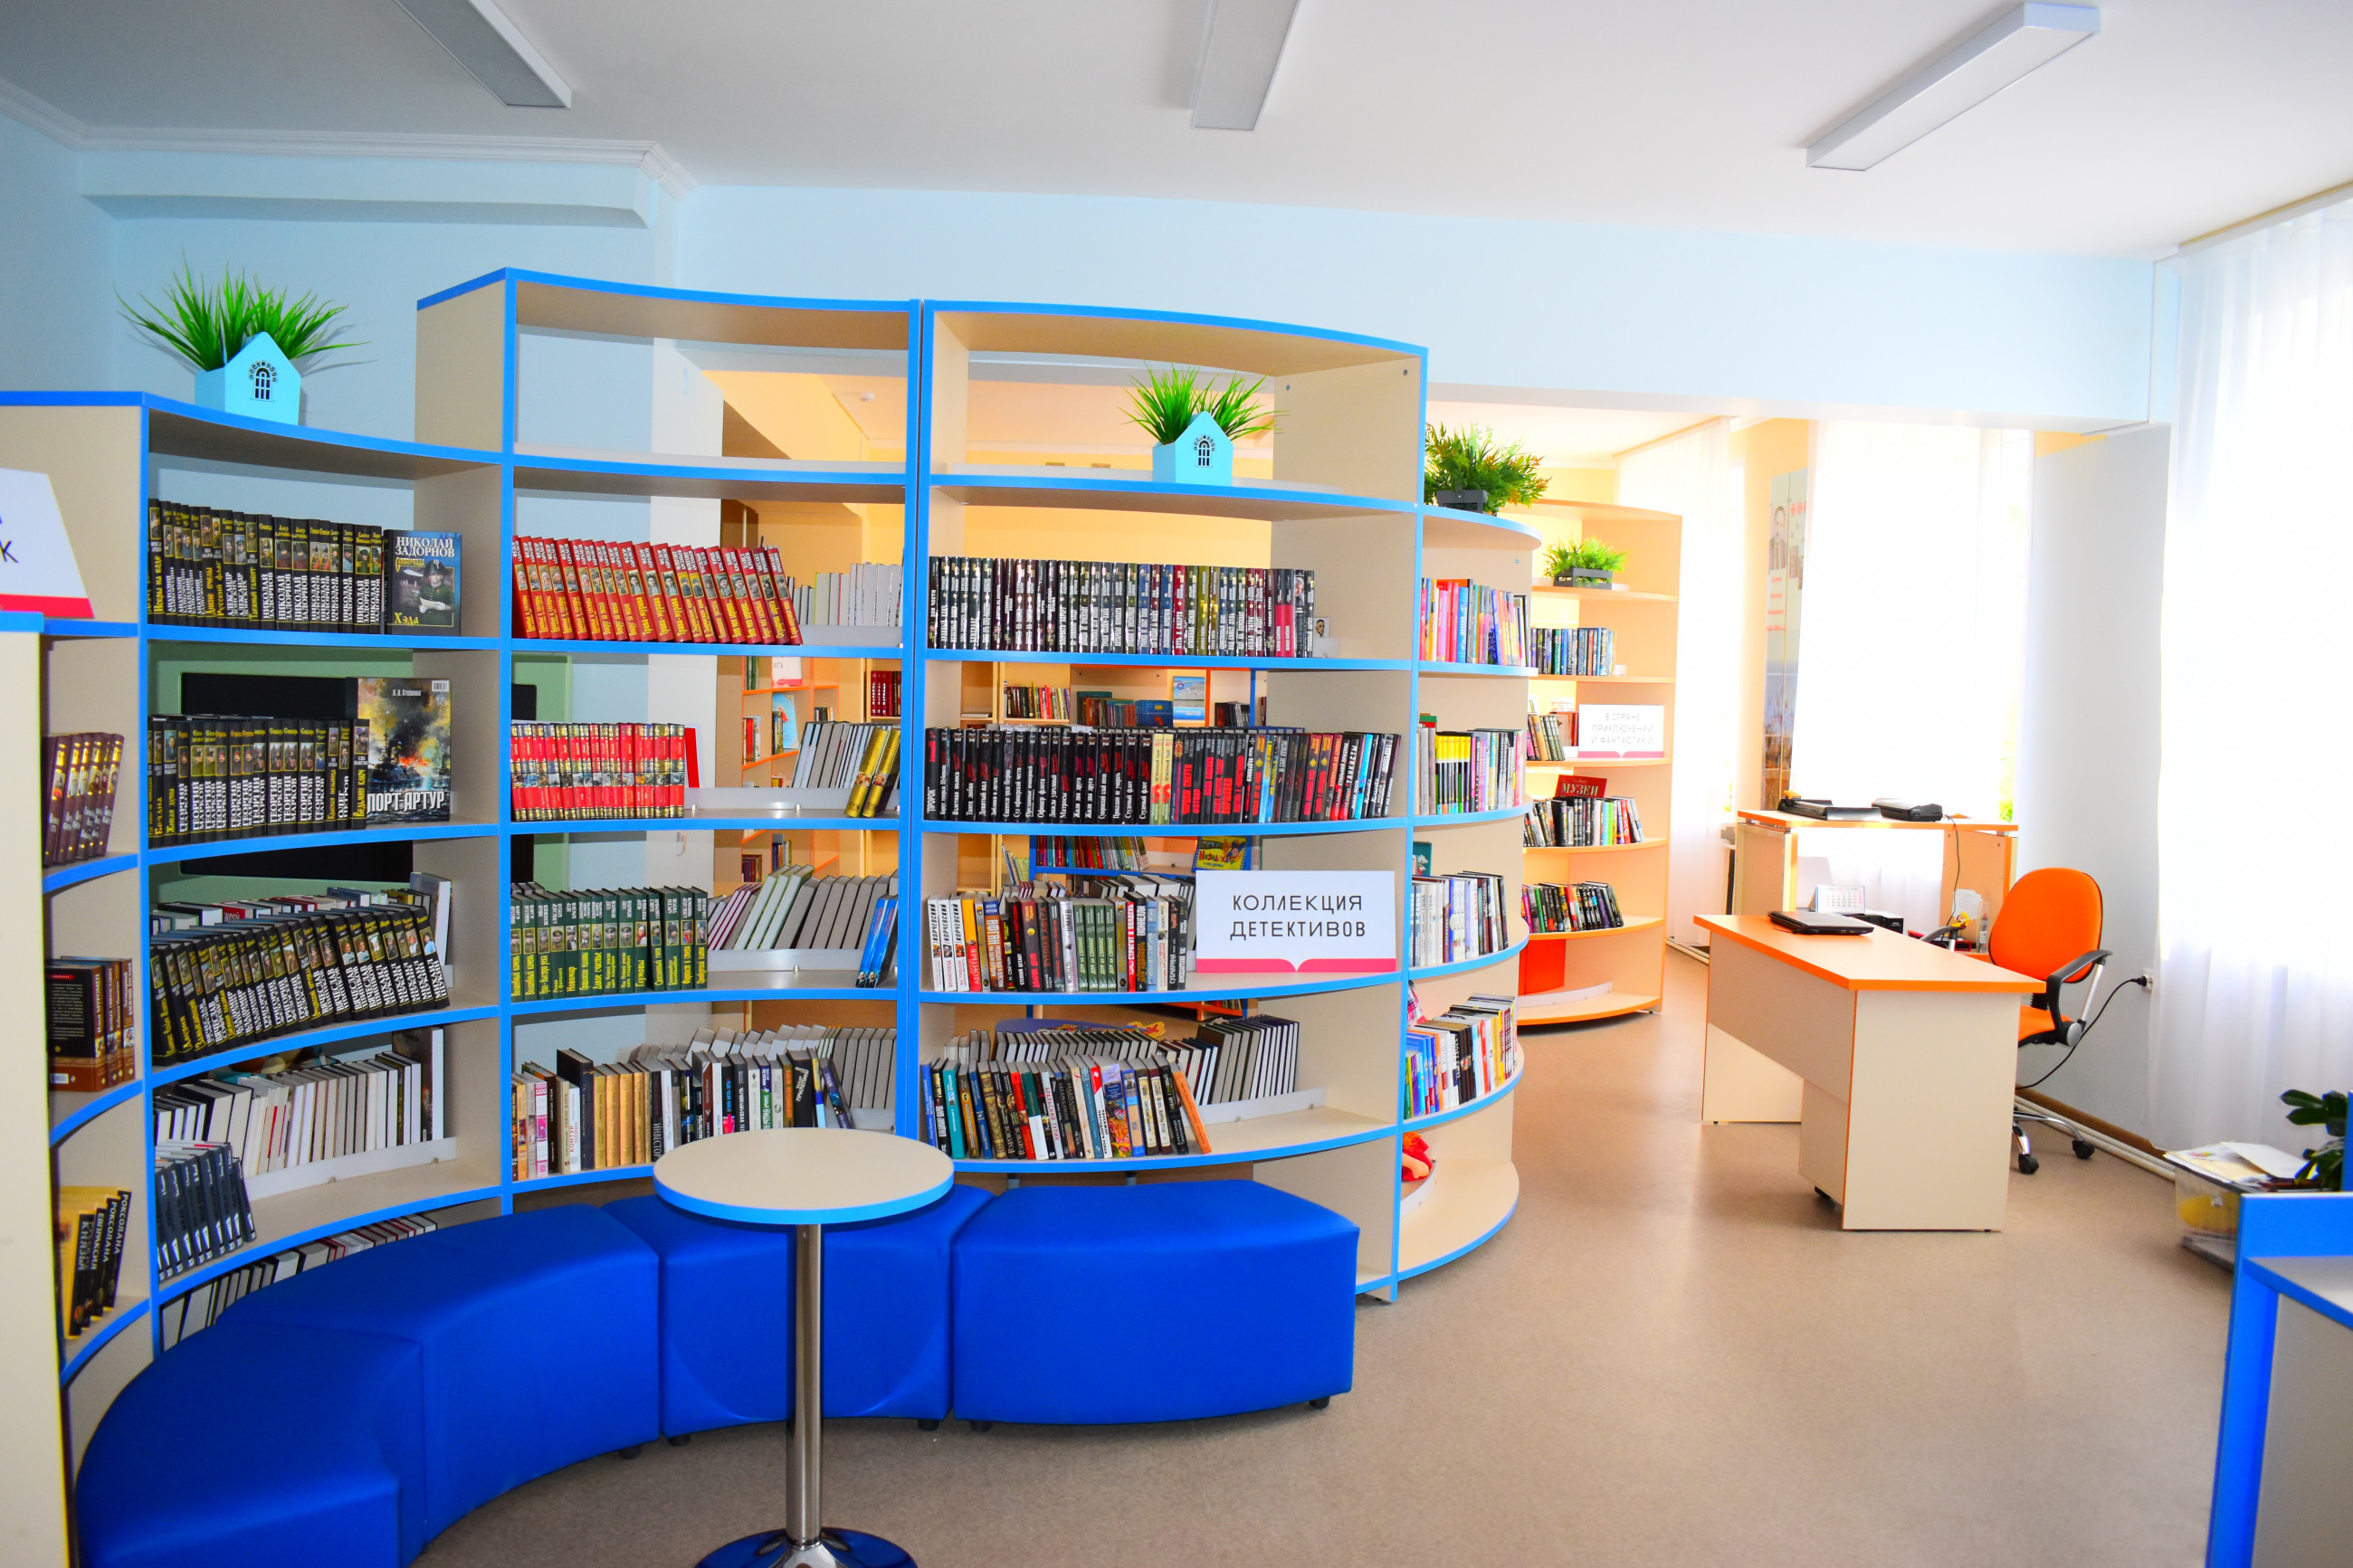 Библиотека и ее возможности. Модельная библиотека. Новая библиотека. Библиотека нового поколения. Современная модельная библиотека.